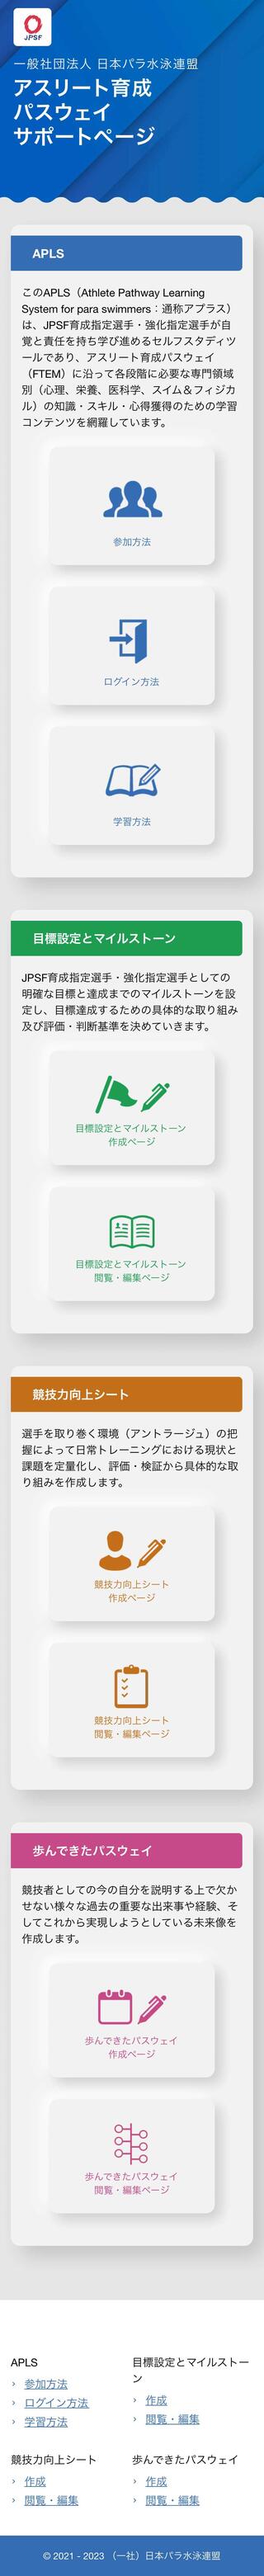 一般社団法人 日本パラ水泳連盟　アスリート育成パスウェイサポートページのスマートフォン画面